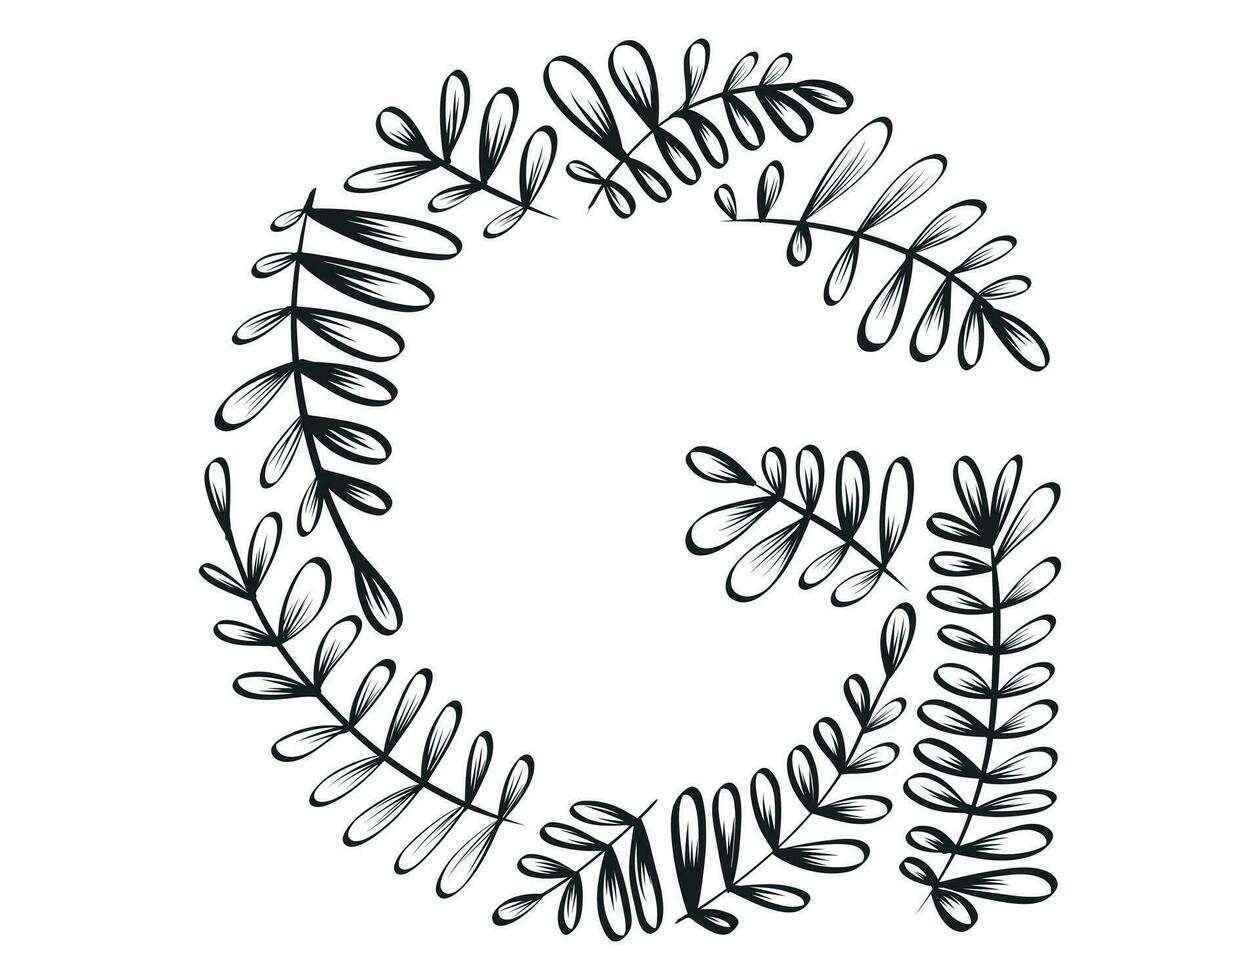 geïsoleerd vector decoratief brief g van de Latijns alfabet. botanisch lettertype, zwart schetsen takken en bladeren.